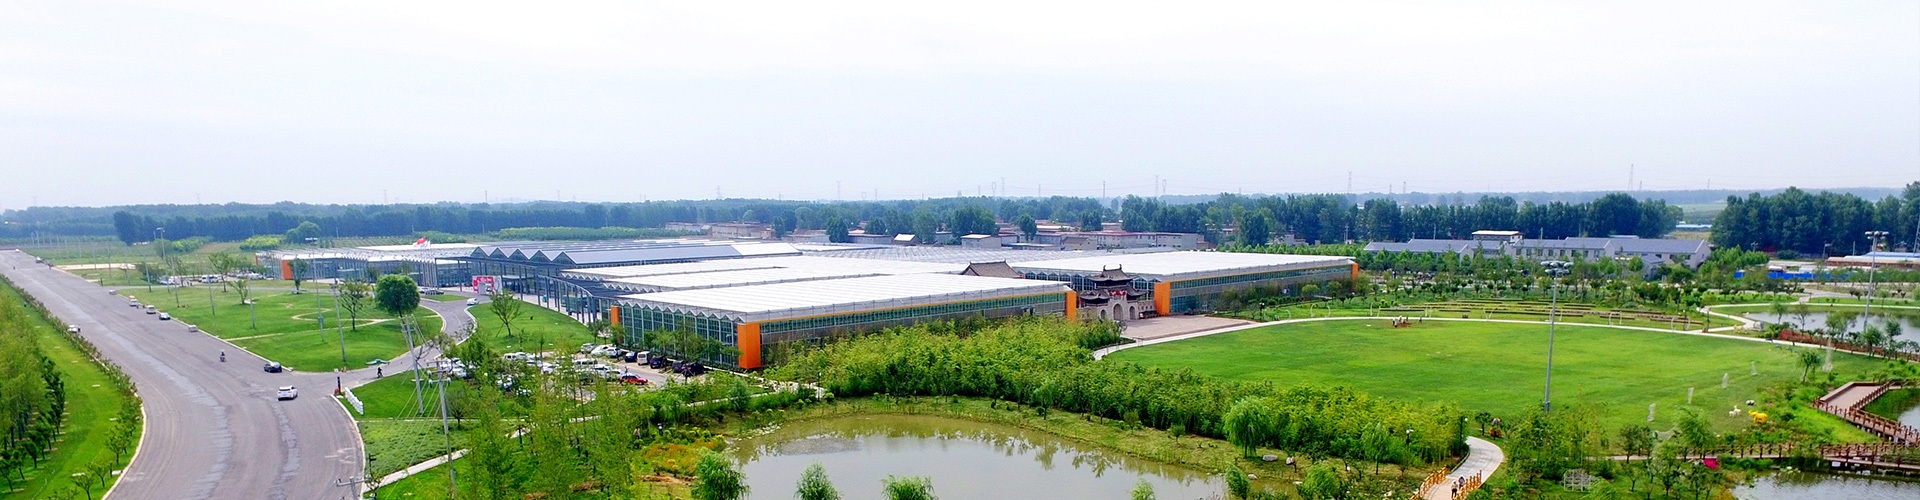 河南農園農業科技開發有限公司